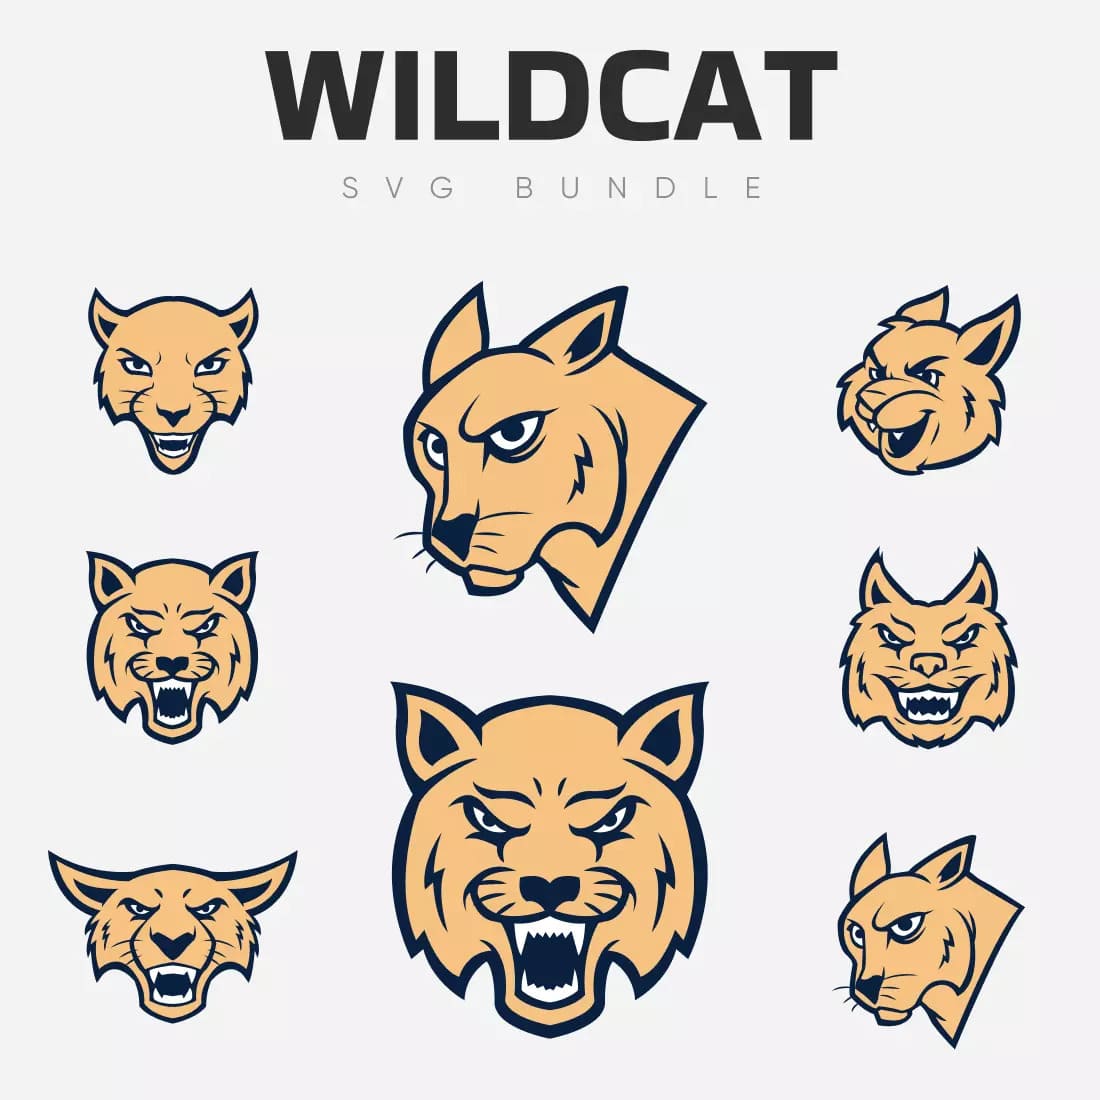 The wildcat svg bundle.